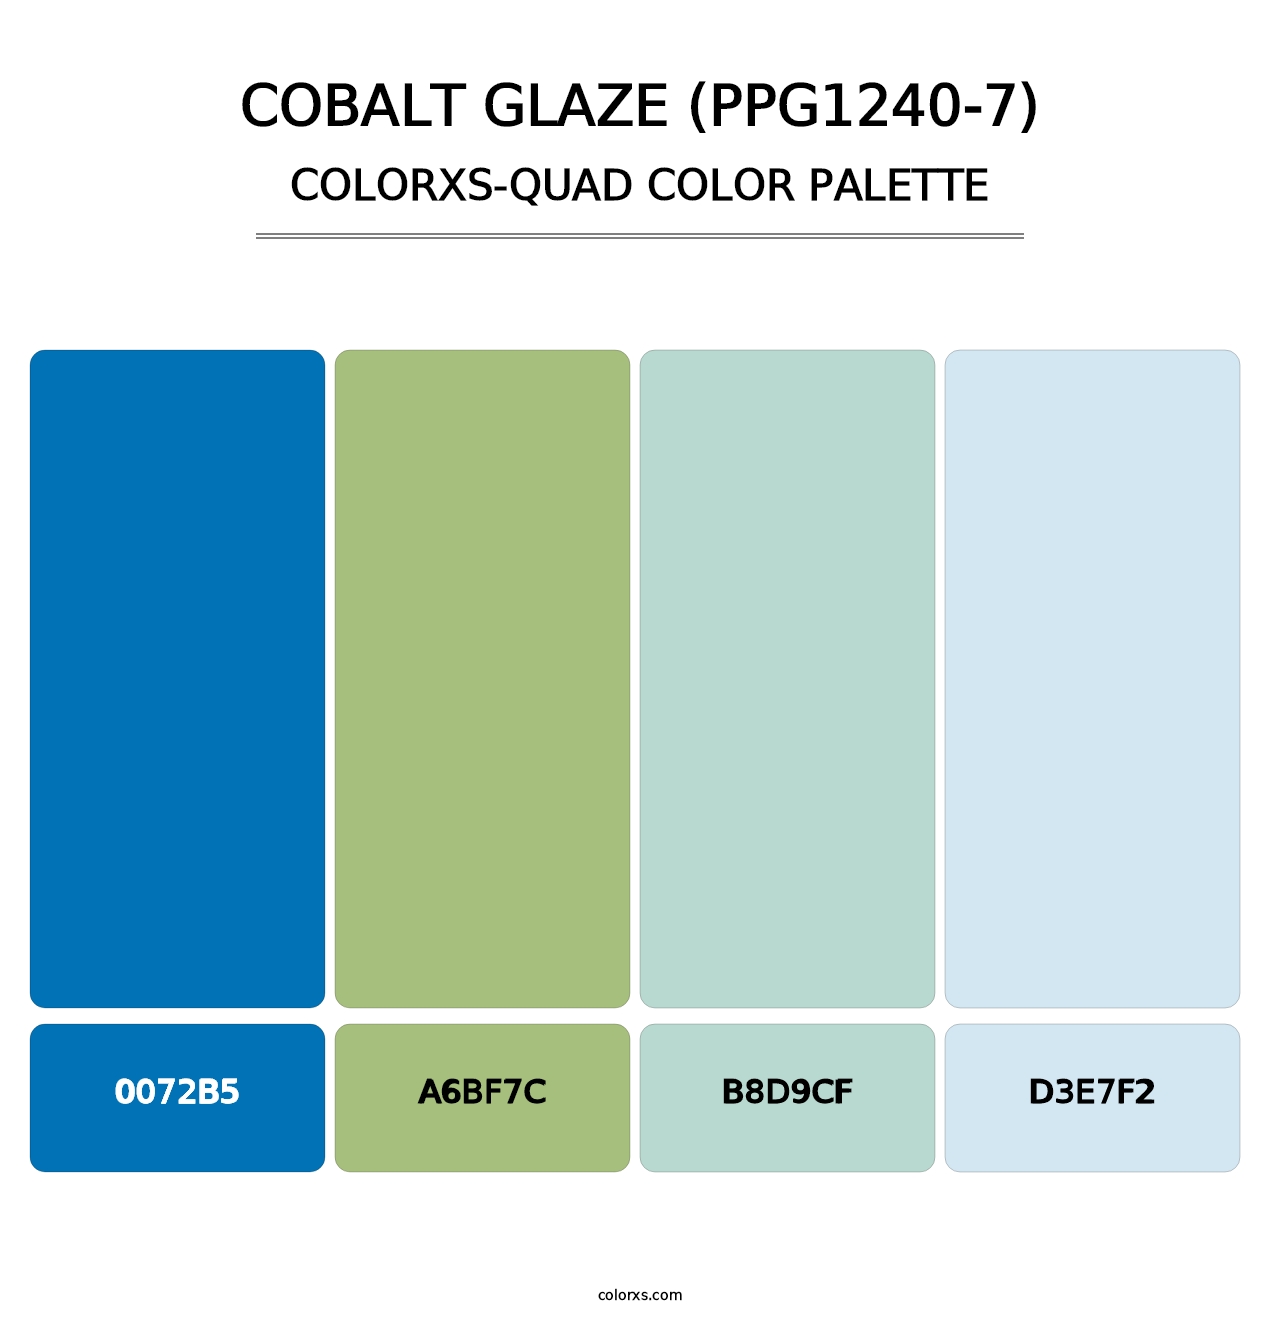 Cobalt Glaze (PPG1240-7) - Colorxs Quad Palette